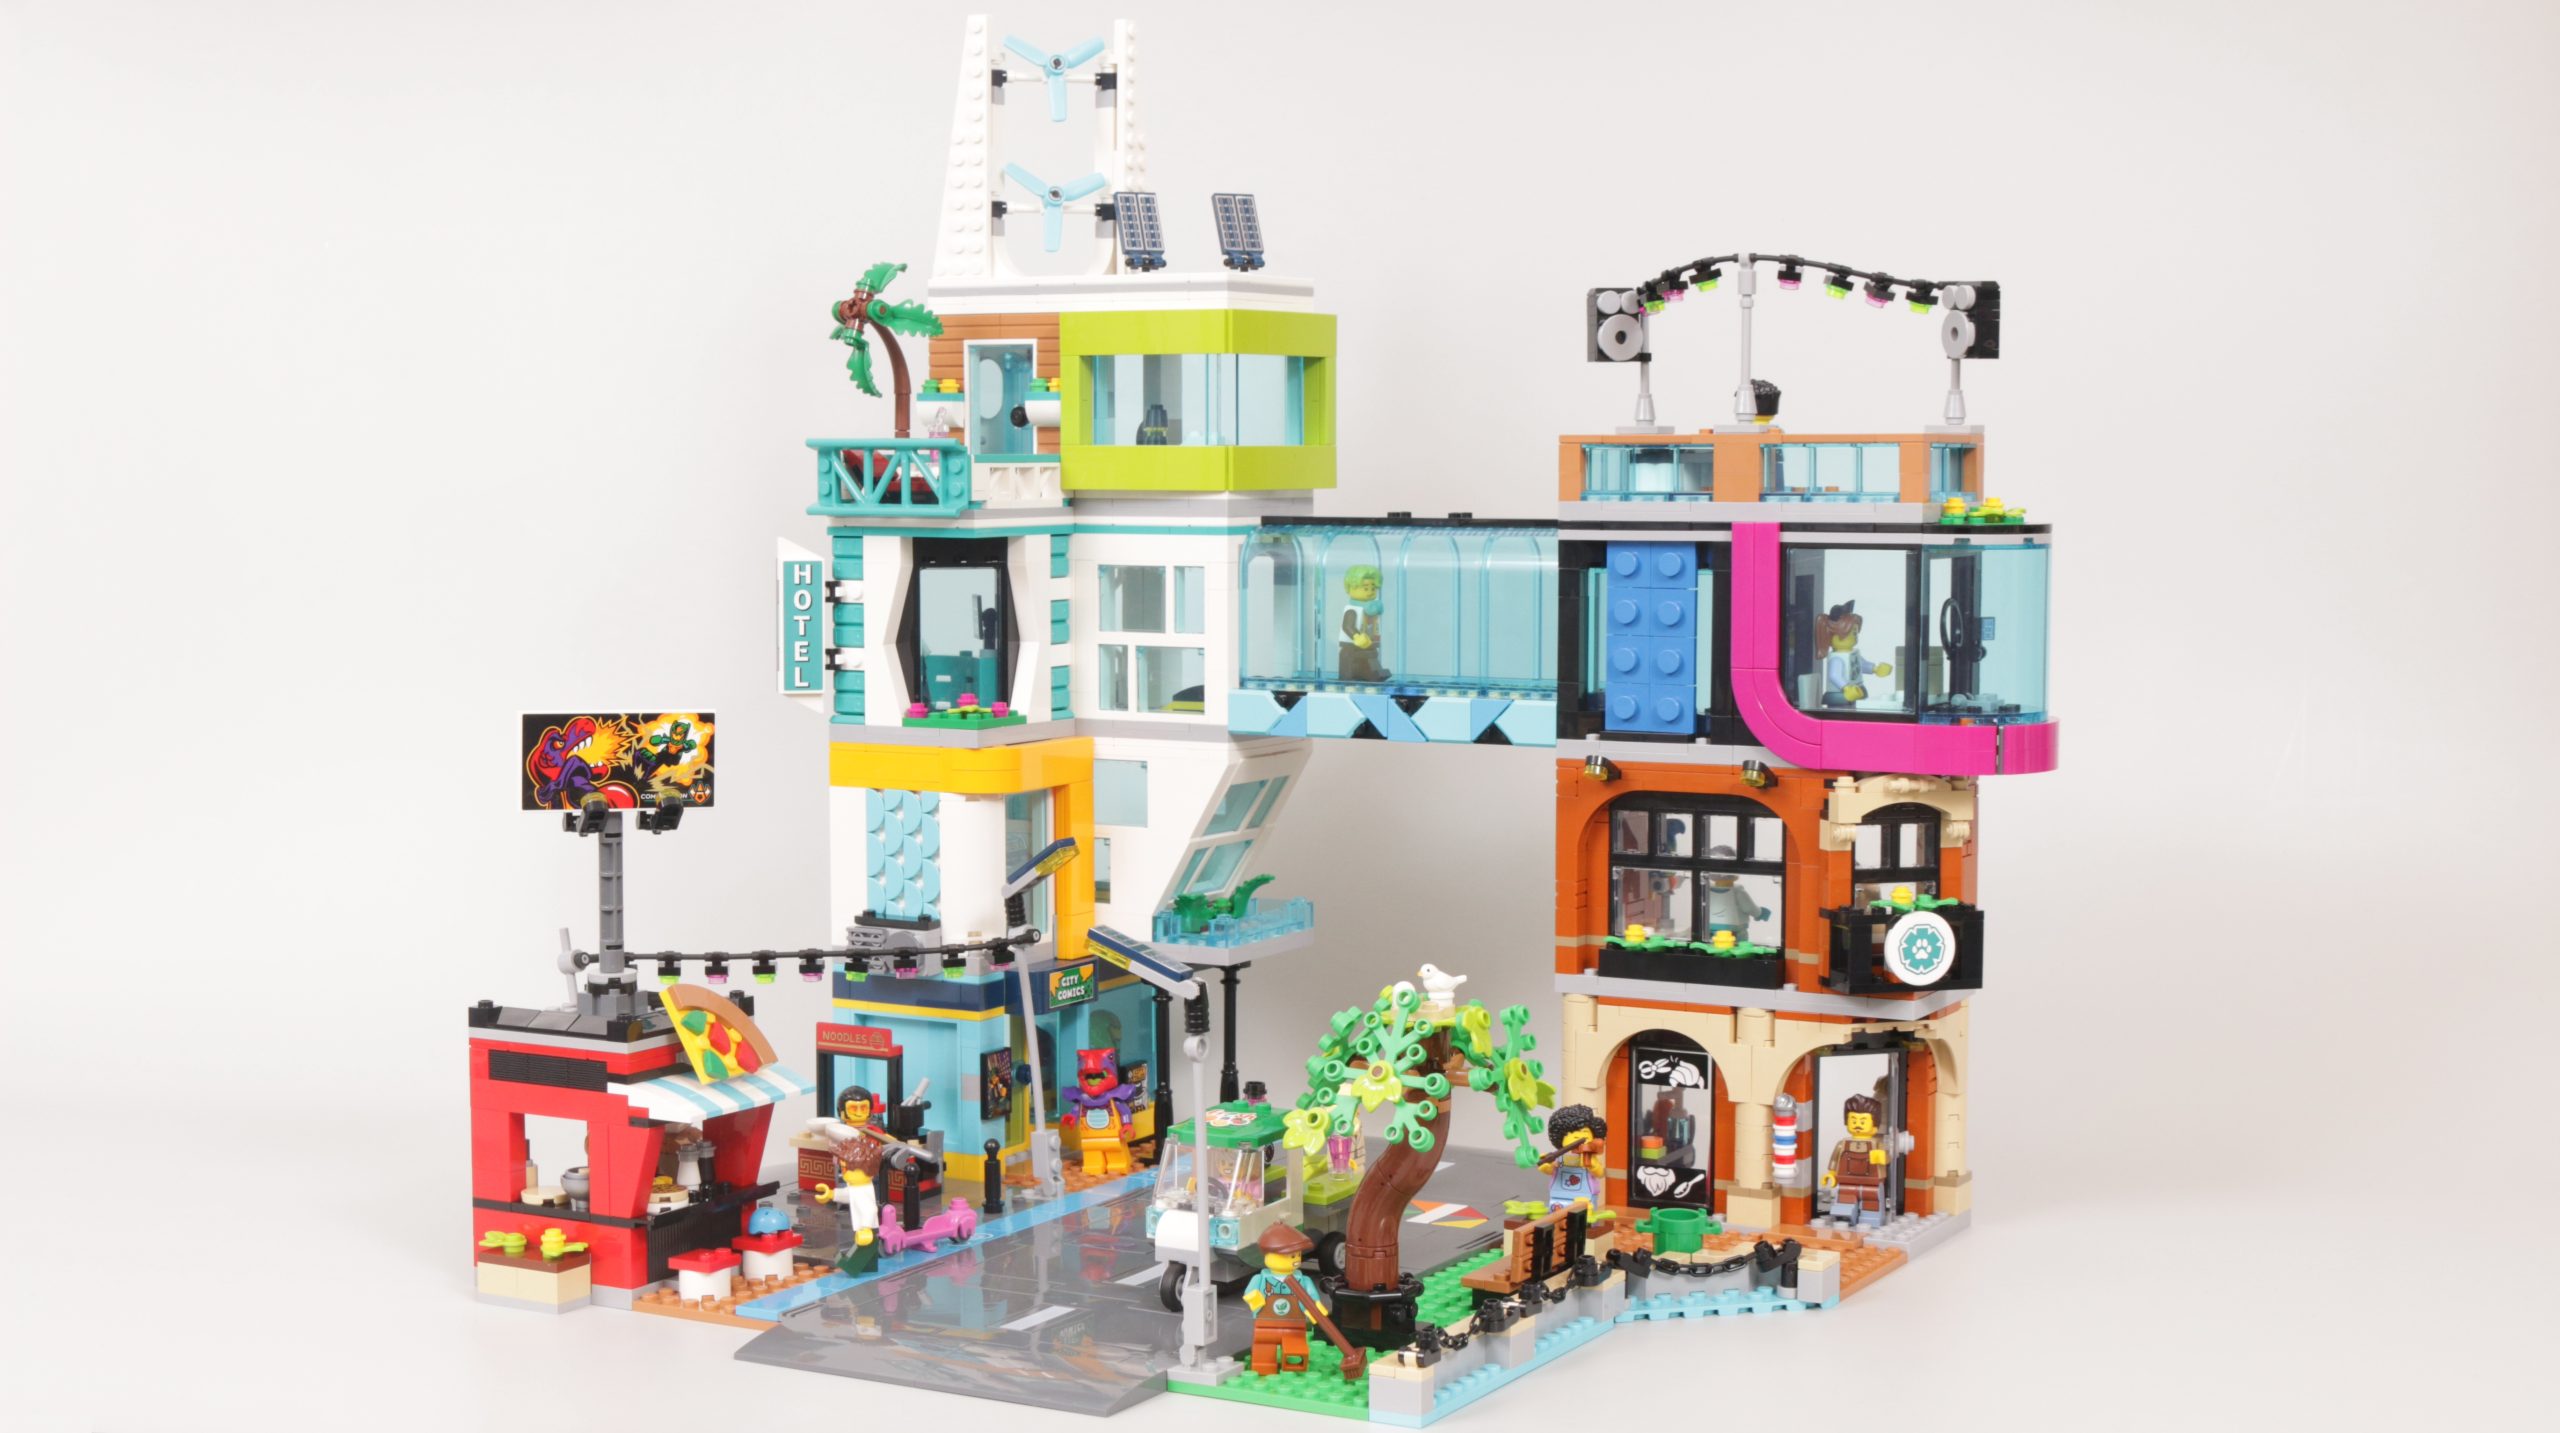 Le Centre Ville - Lego City